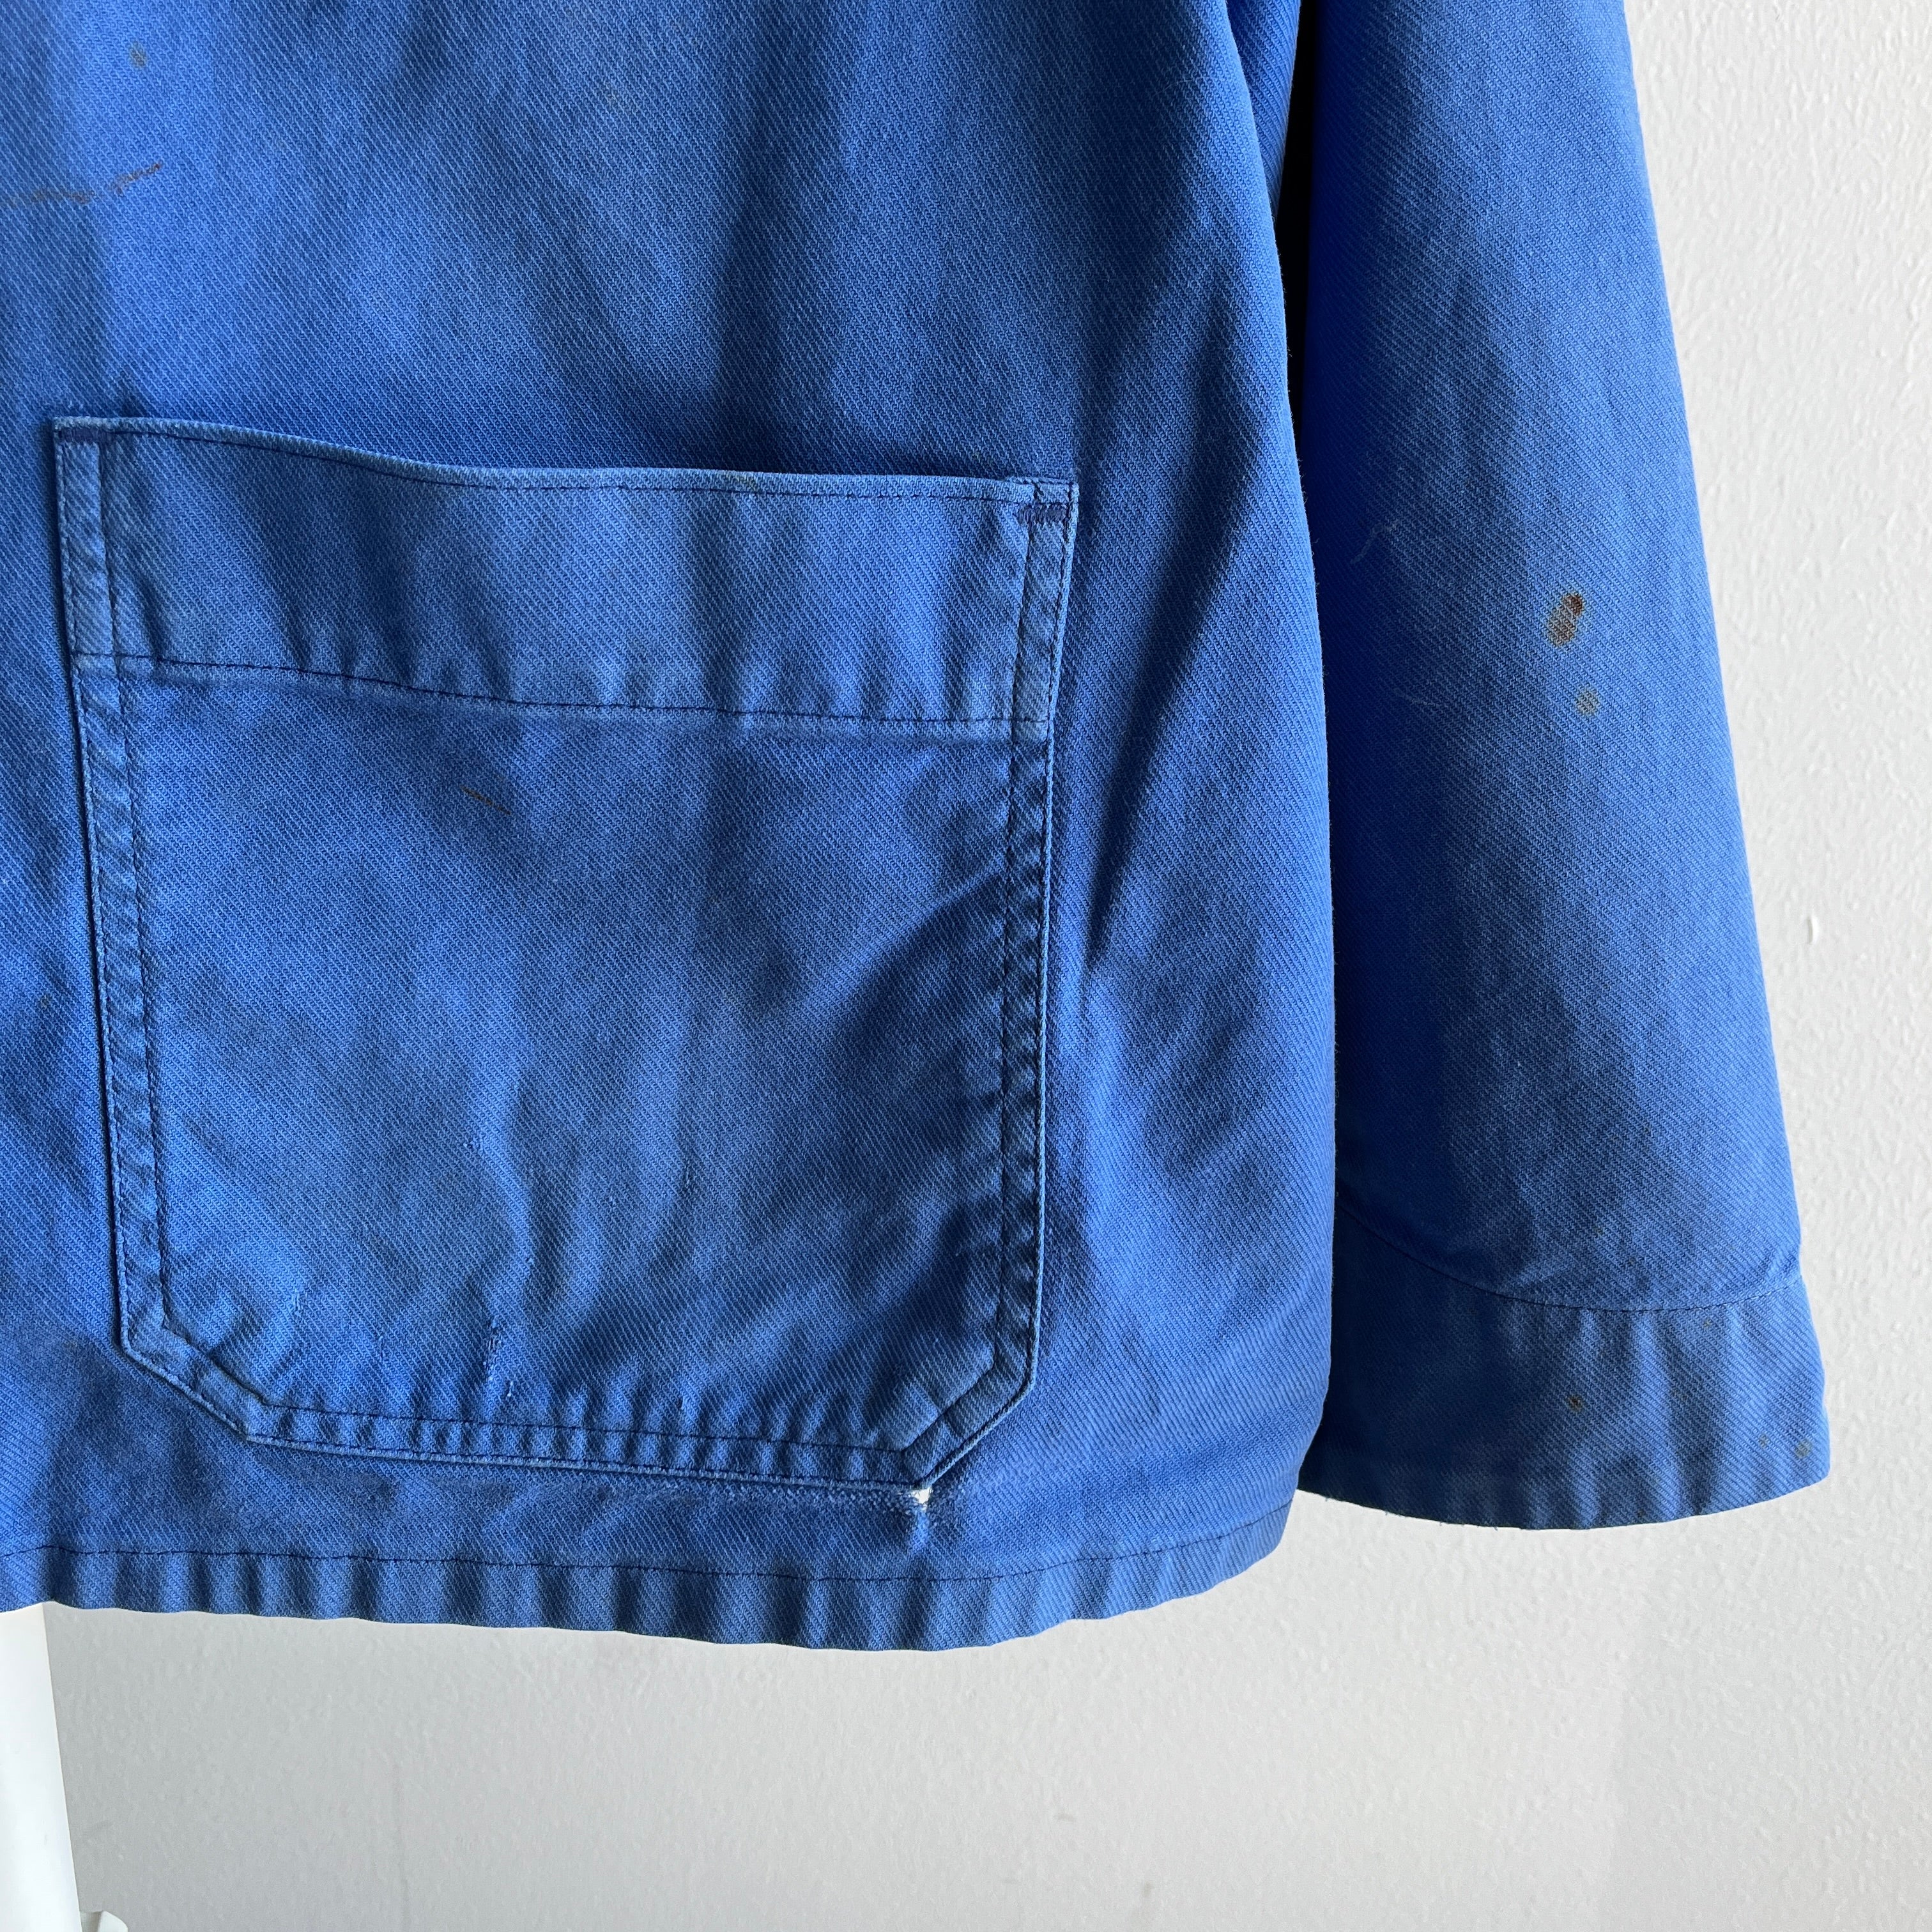 Manteau de corvée français délavé des années 1980 - mélange de coton